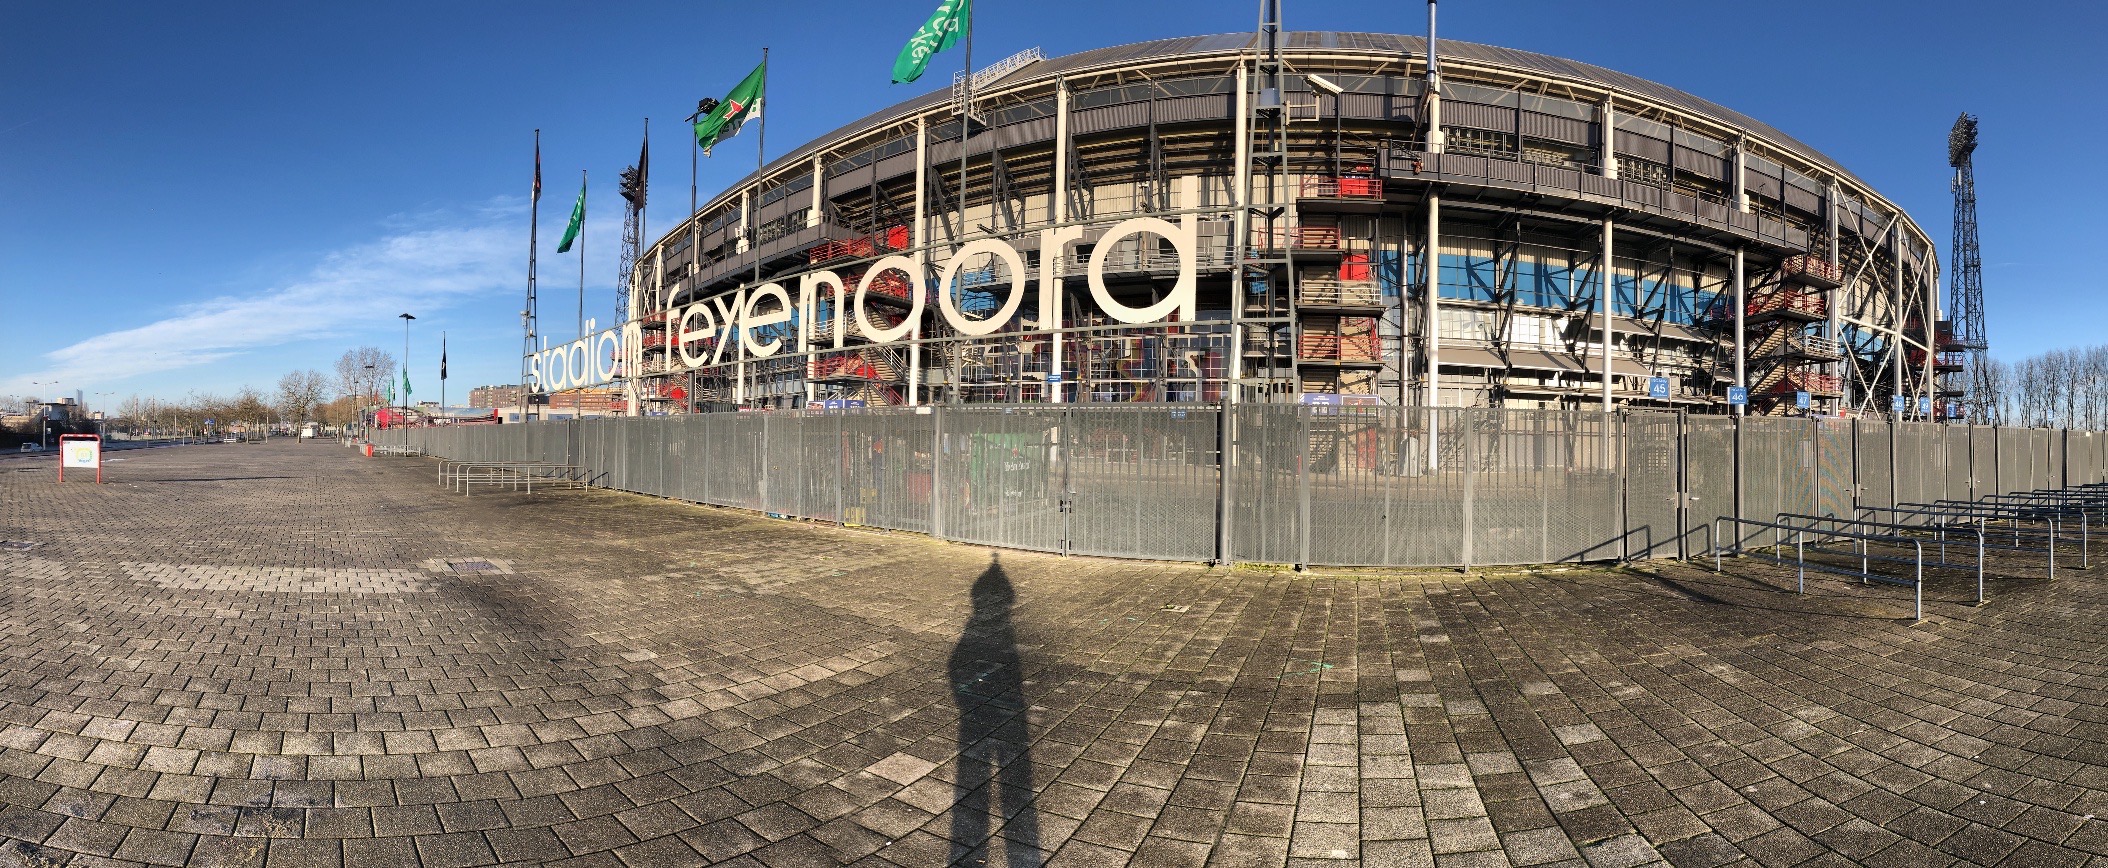 Feyenoord stadium in Rotterdam